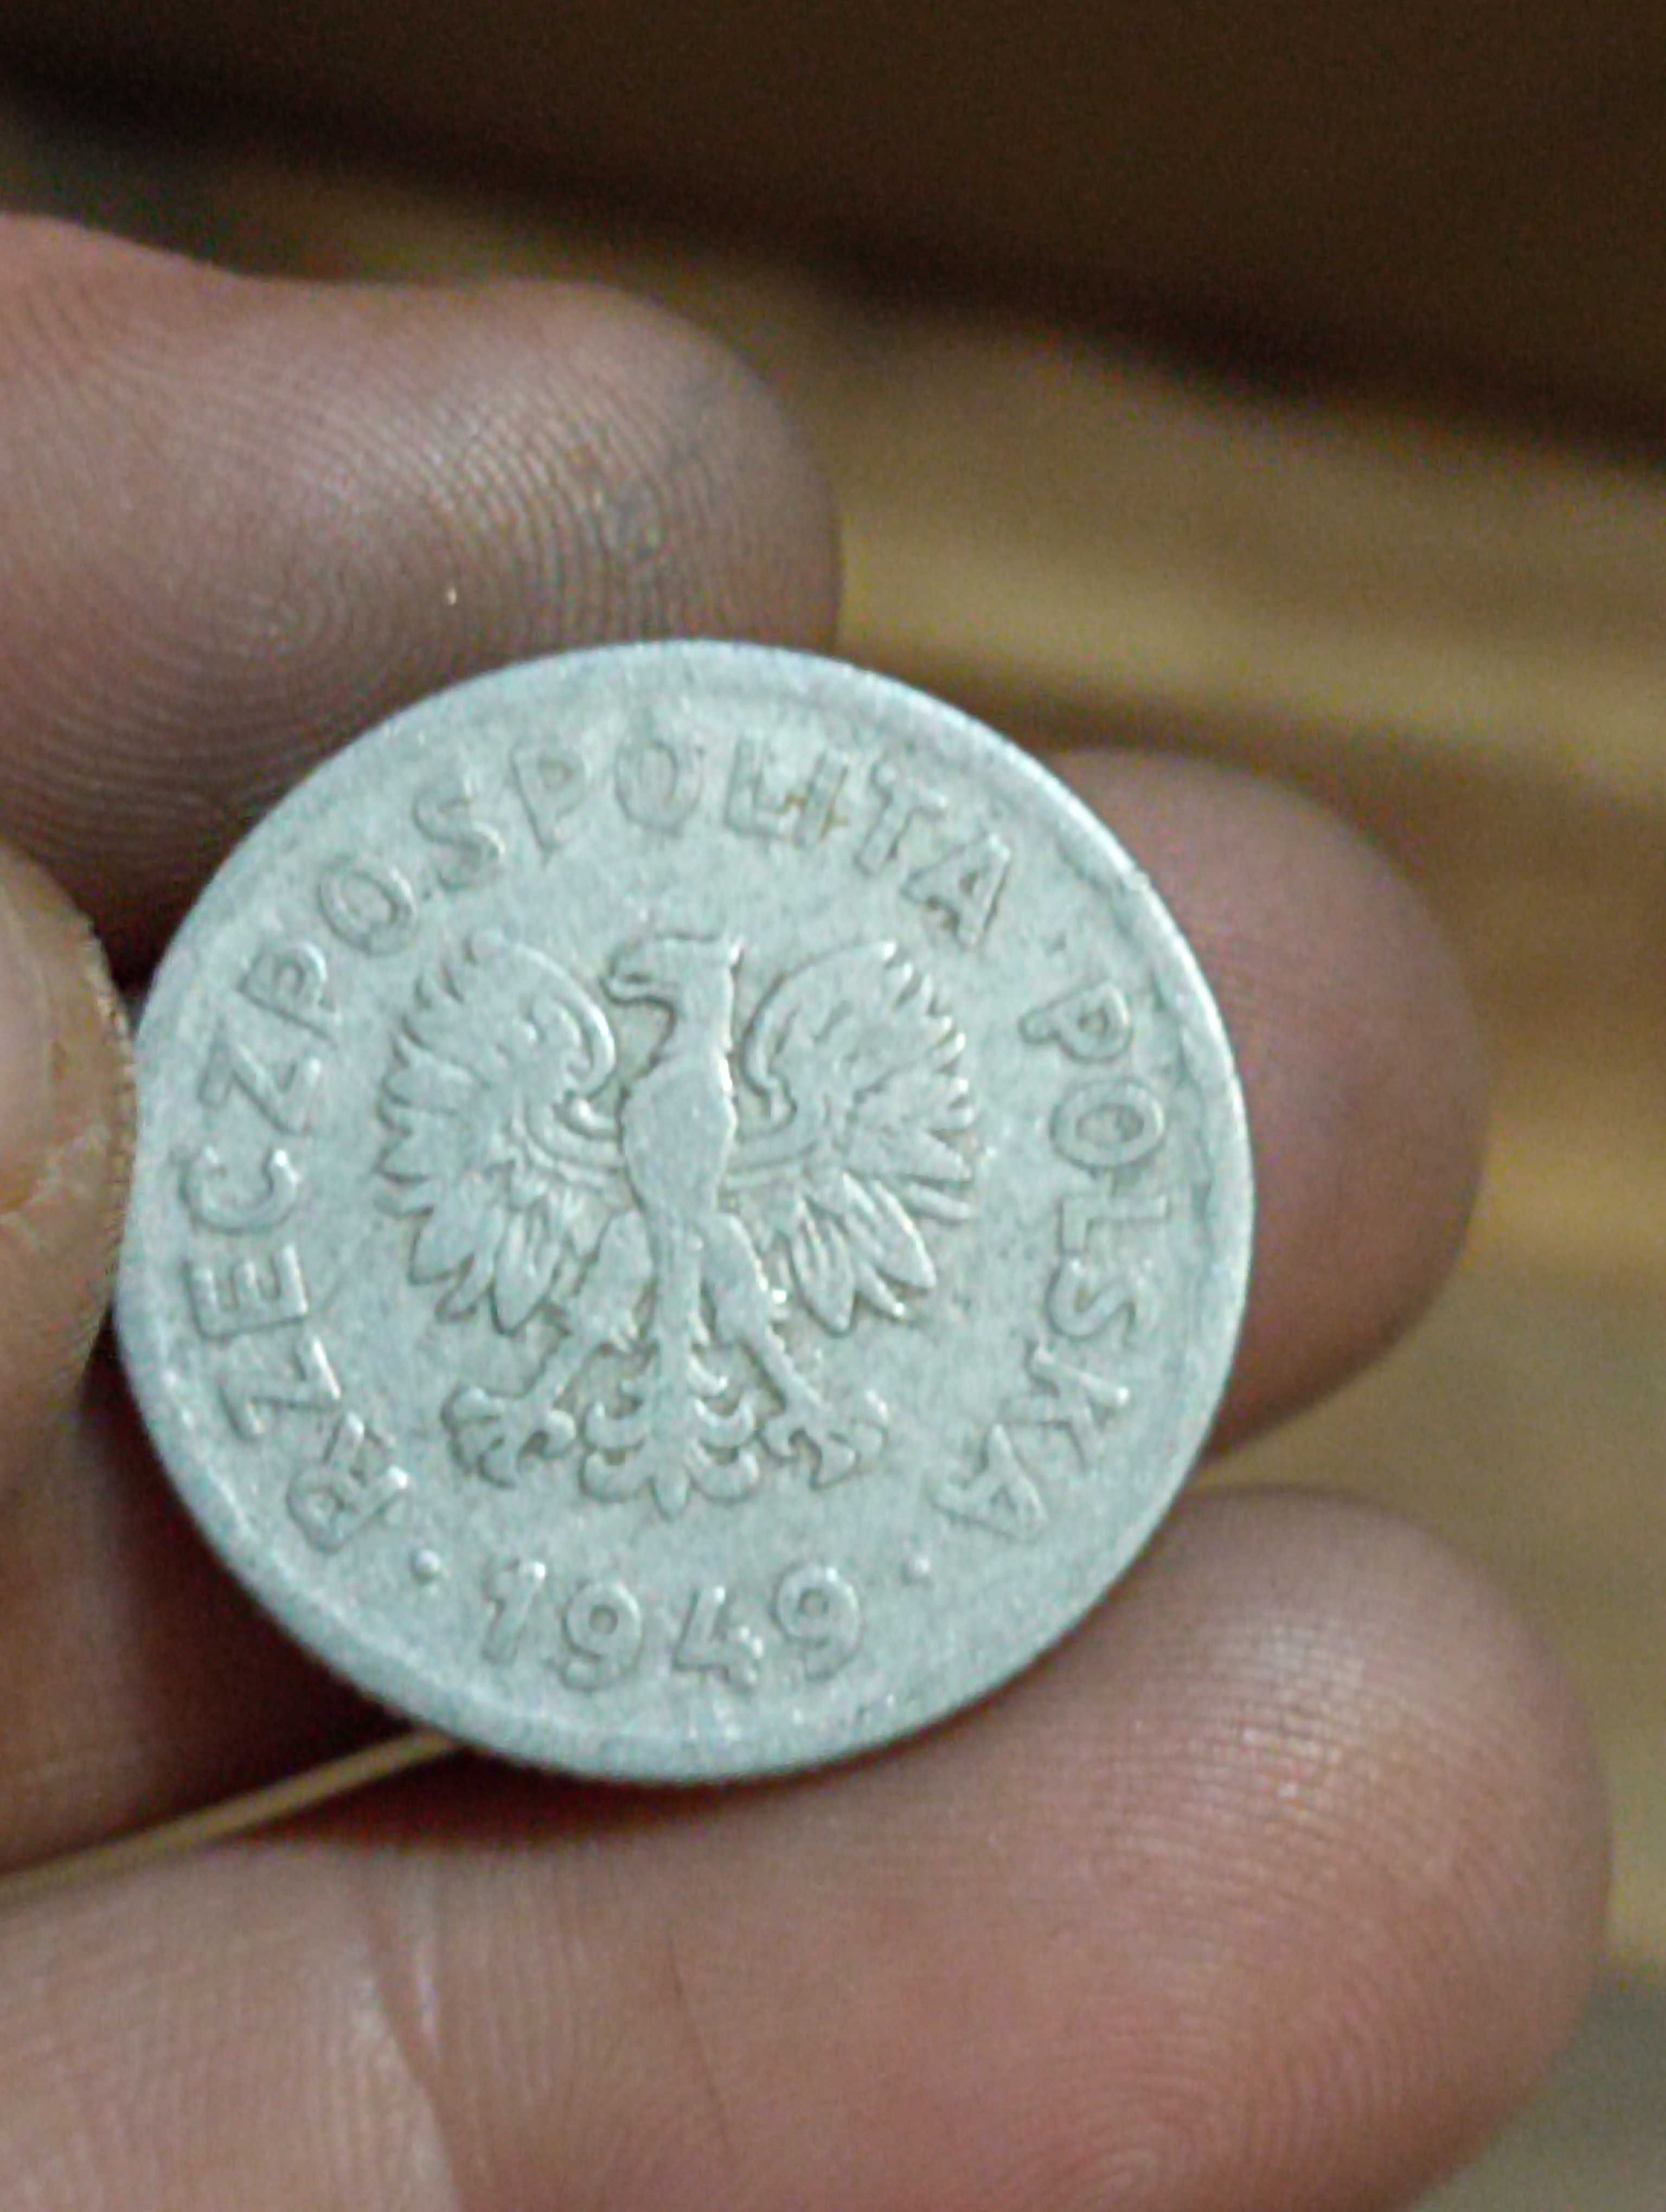 Sprzedam monete ttt 1 zloty 1949 rok bzm